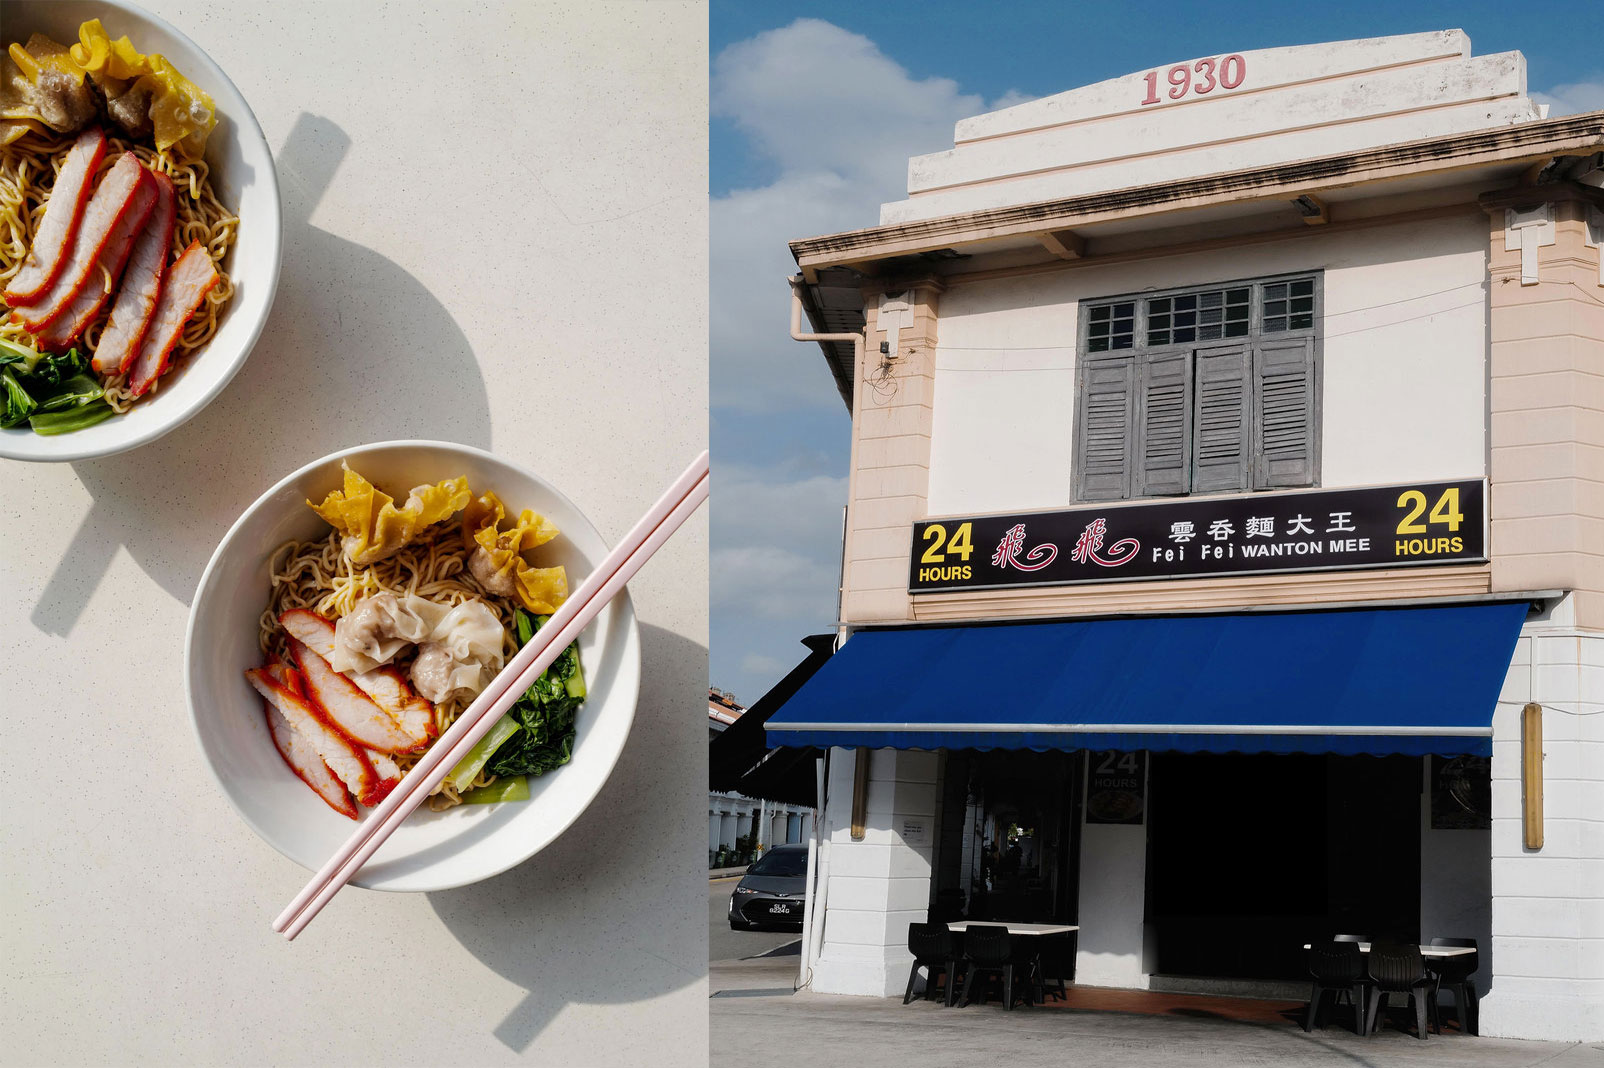 Food Trip around Olloi: Only 4 mins (300m) walk to Fei Fei Wanton Mee